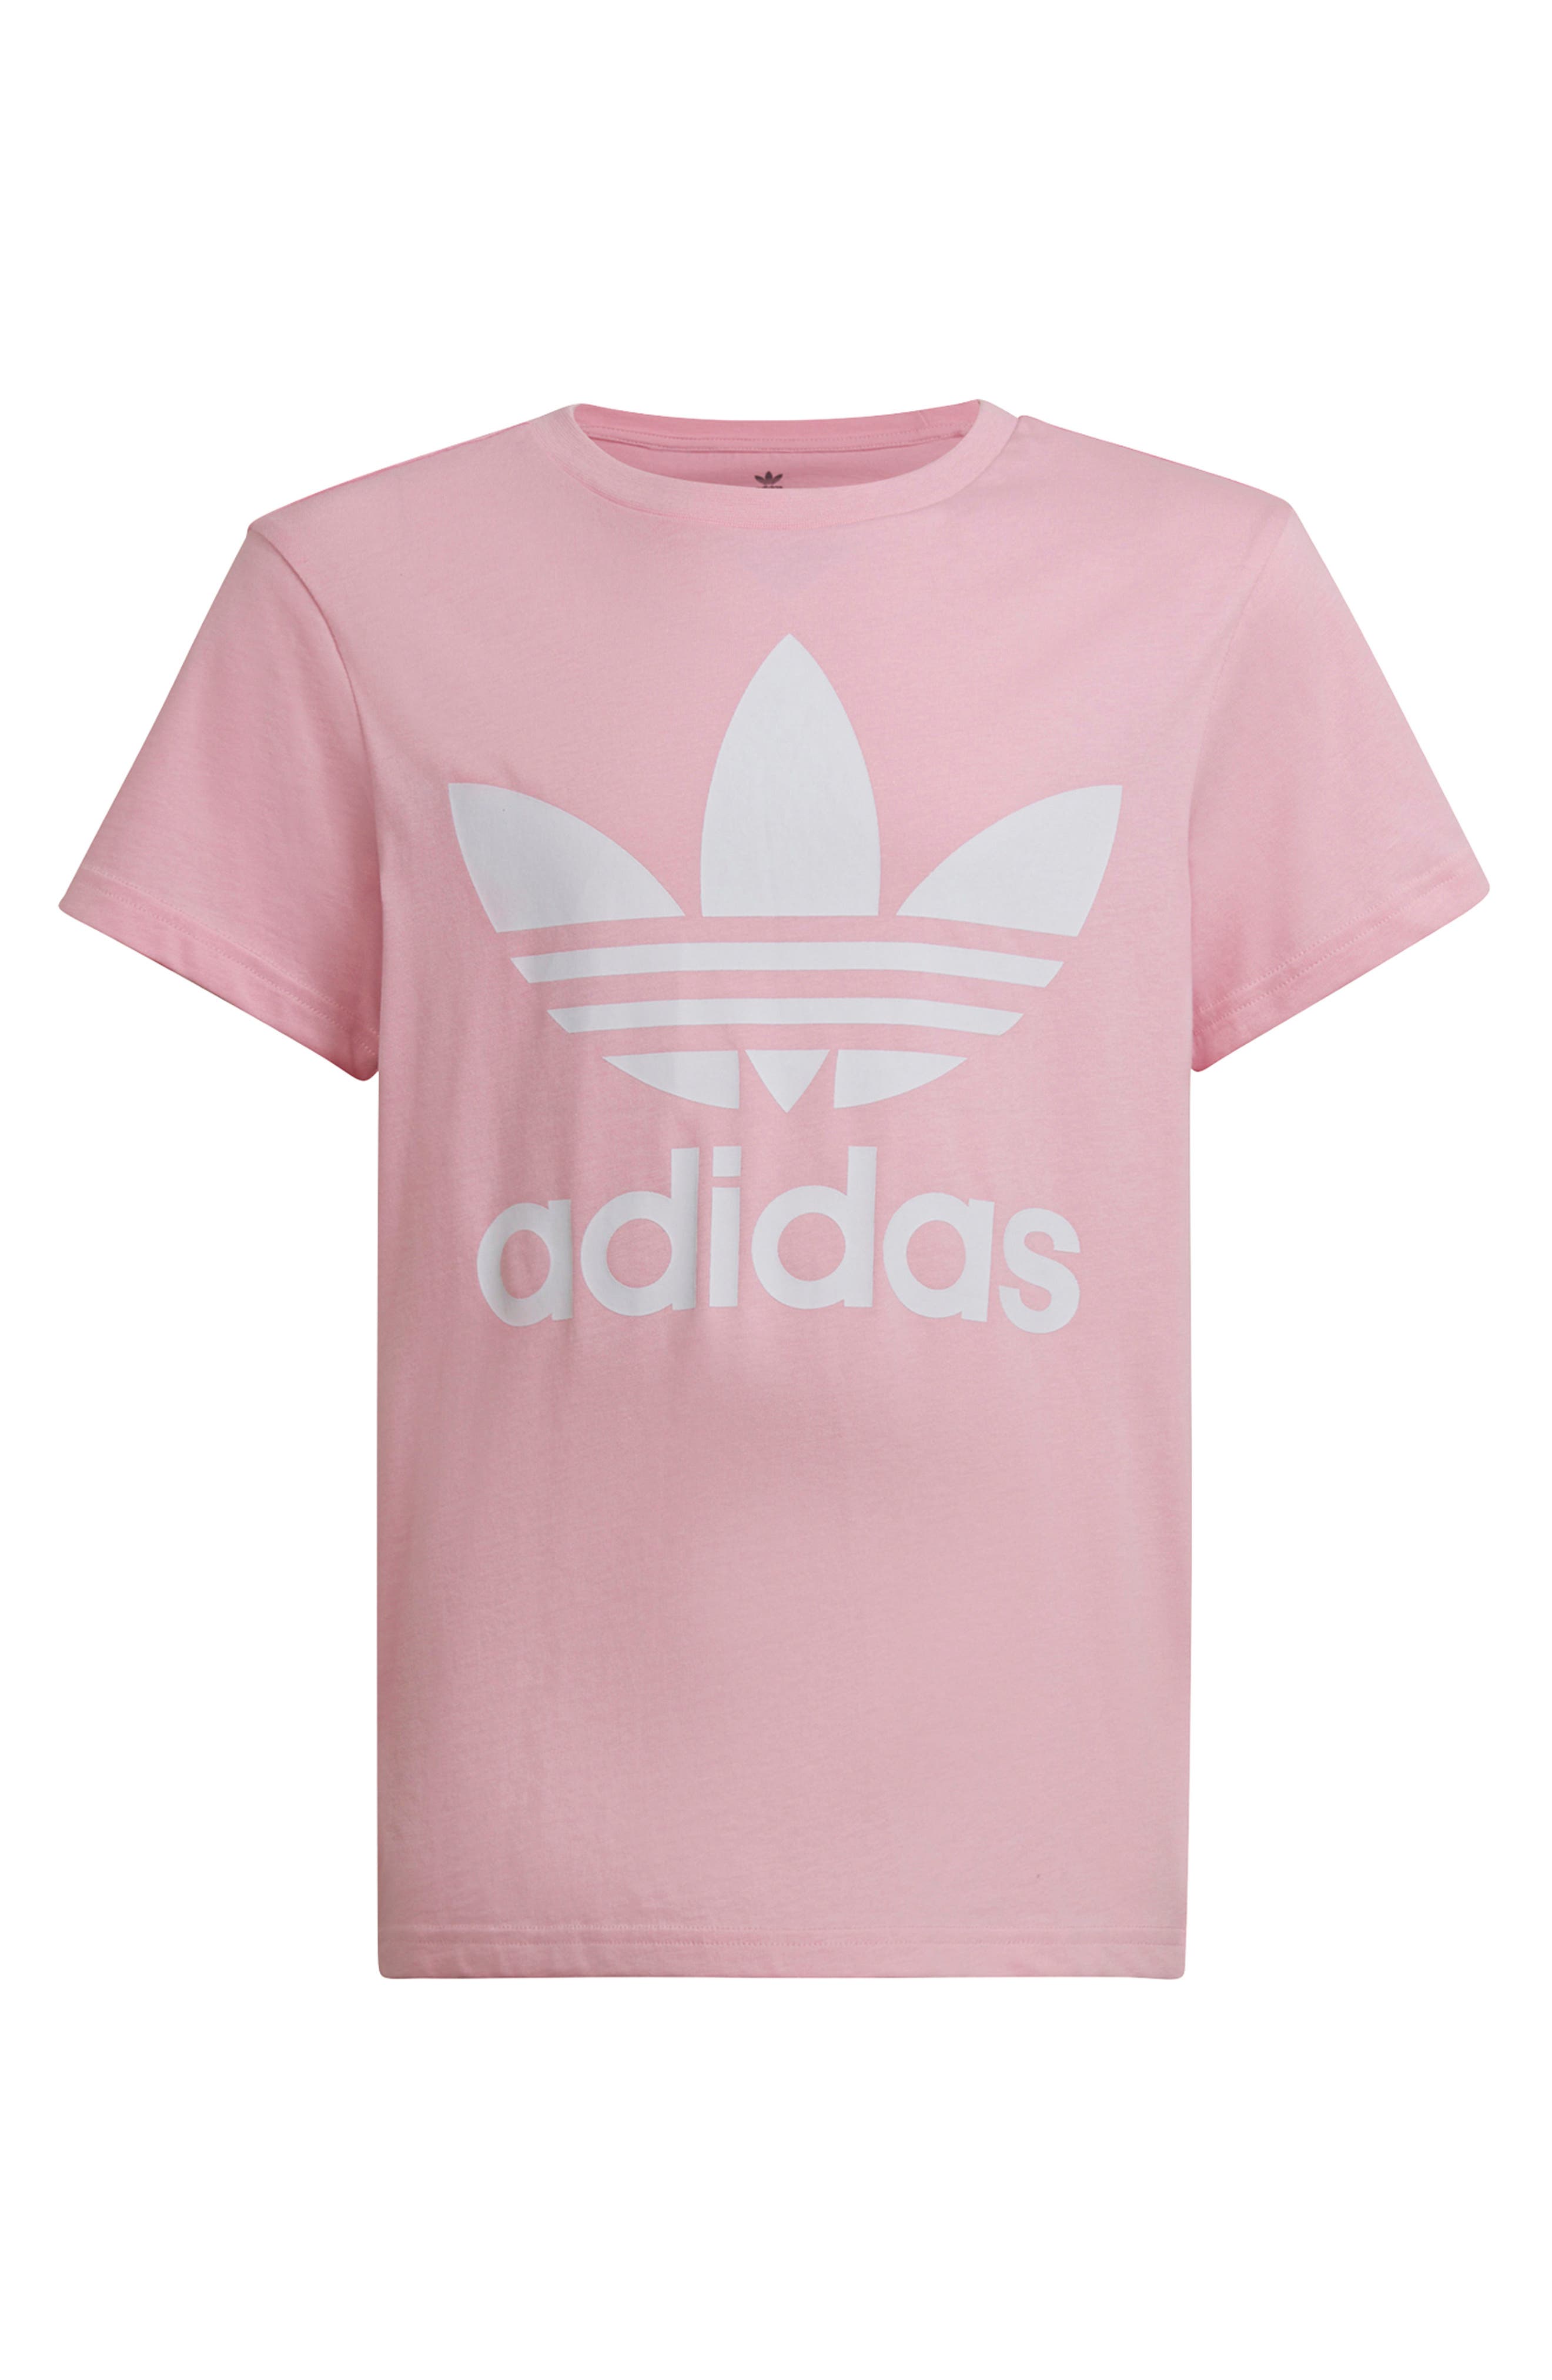 adidas pink logo shirt